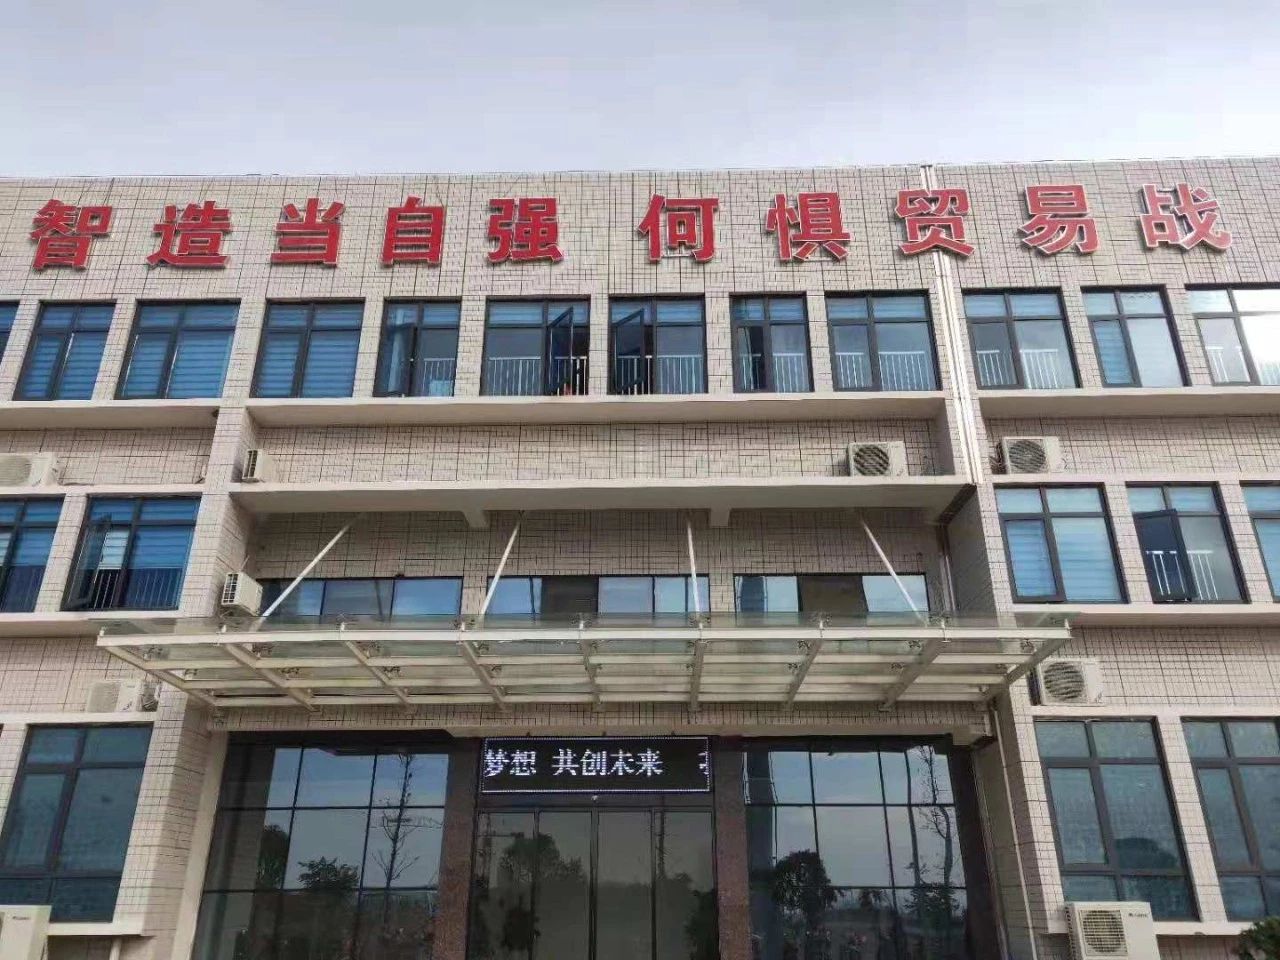 深圳市电将军科技有限公司顺利通过国家军标质量管理体系认证